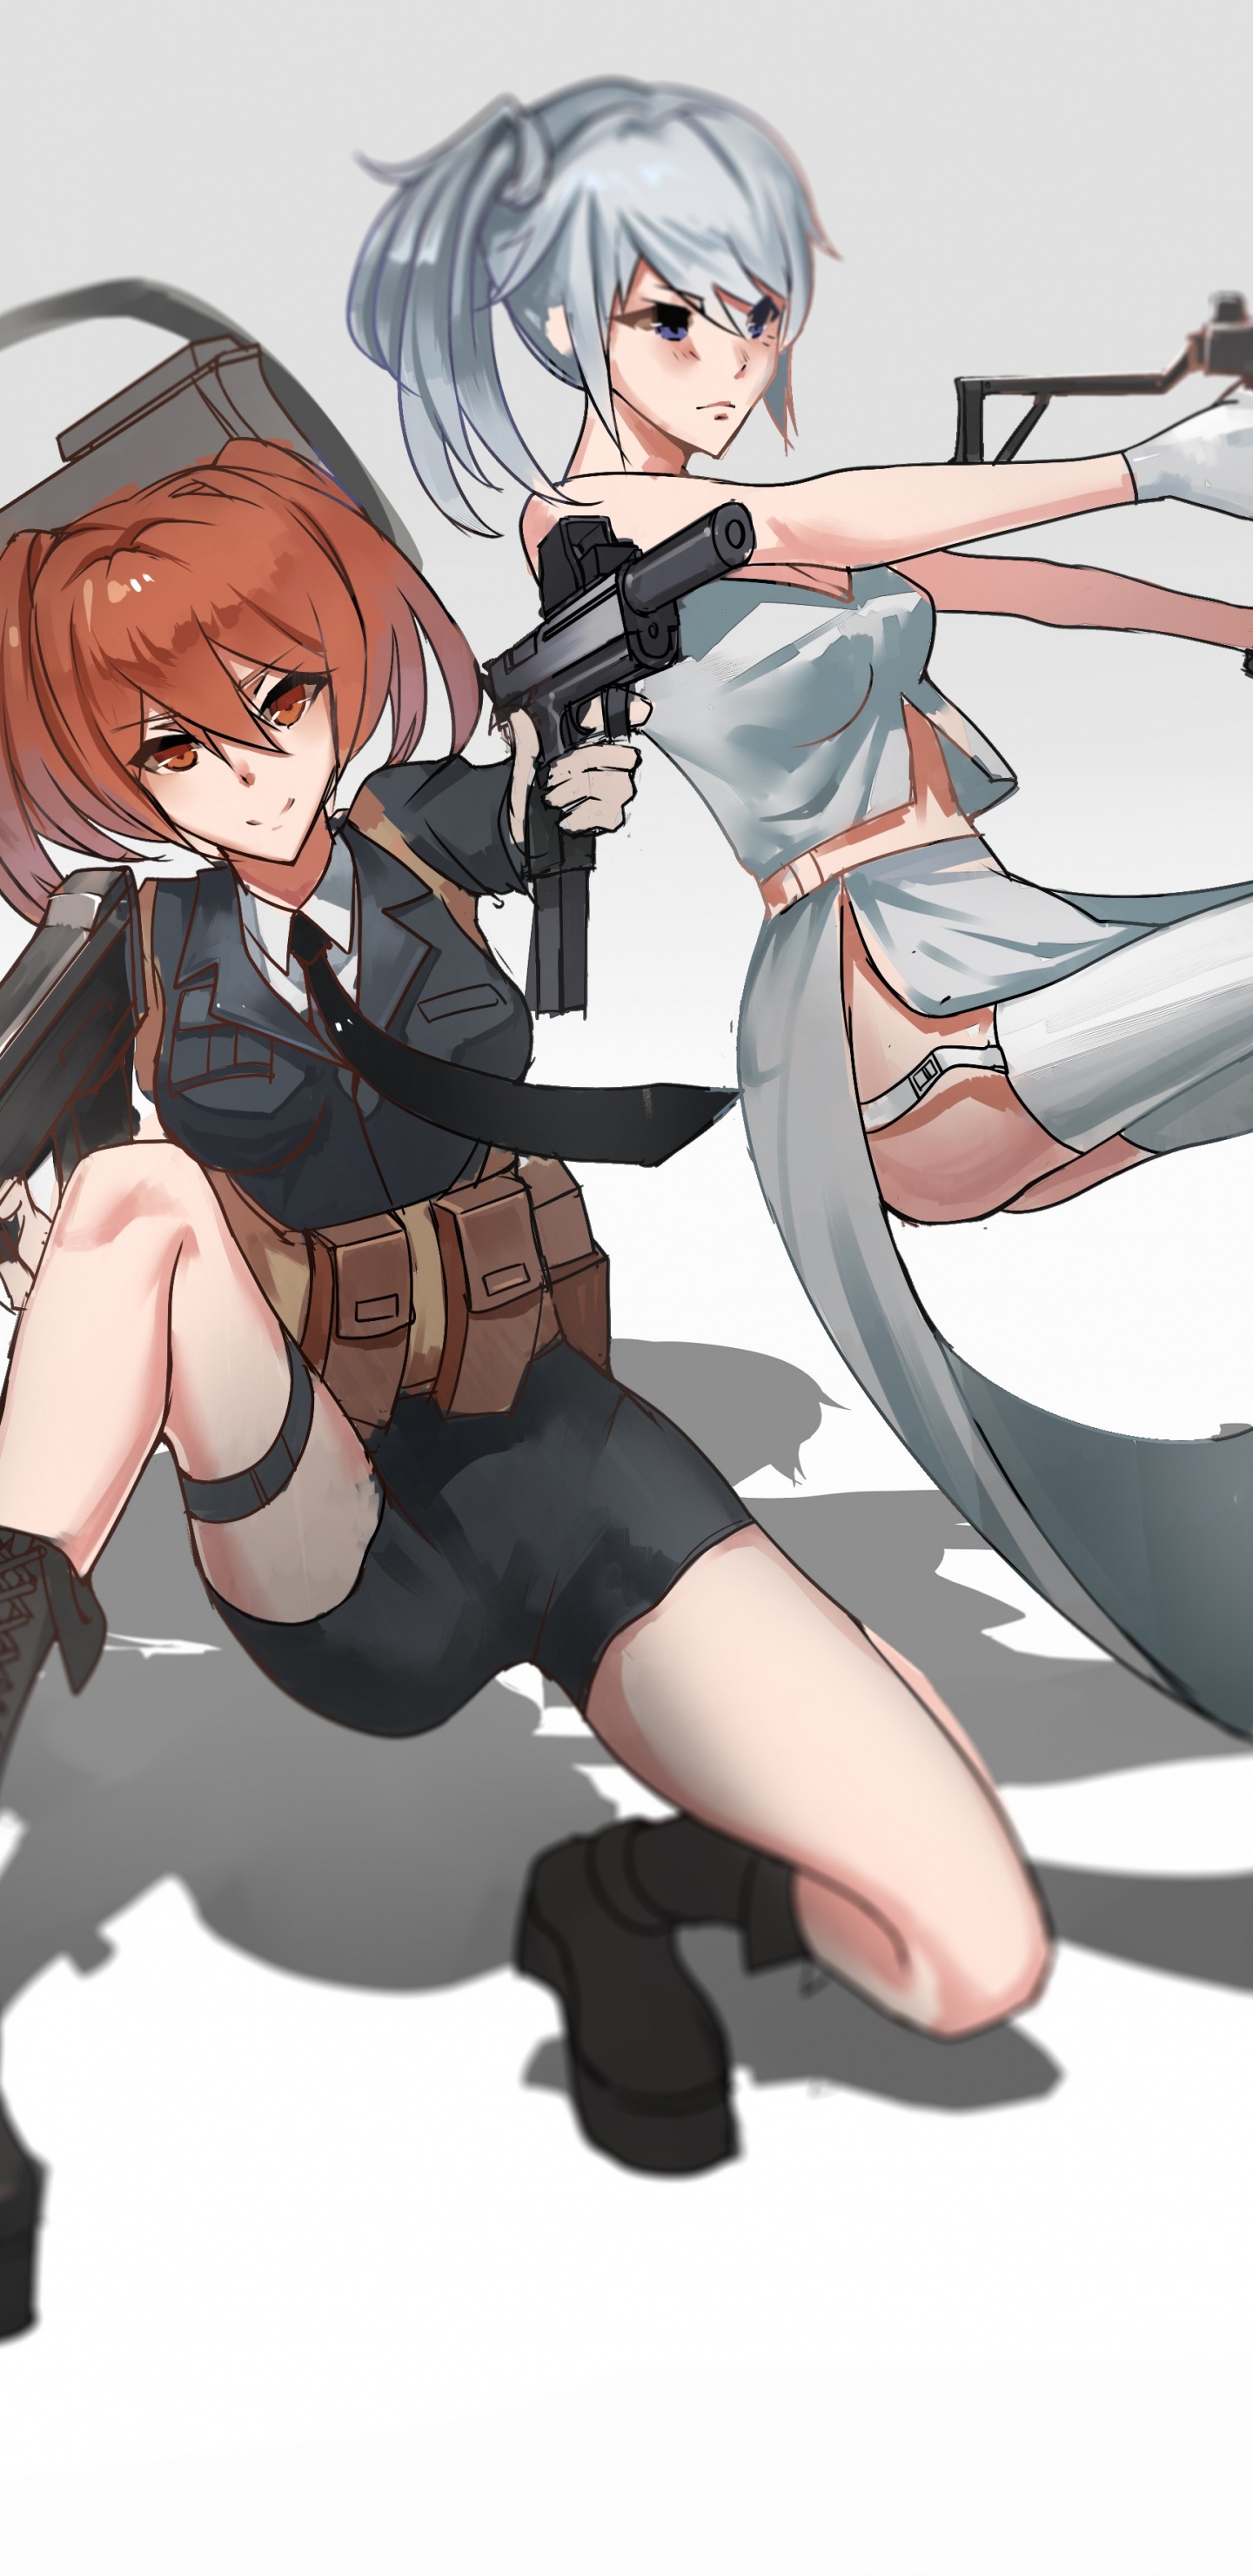 Mujer en Vestido Blanco y Negro Sosteniendo un Personaje de Anime de Rifle. Wallpaper in 1440x2960 Resolution